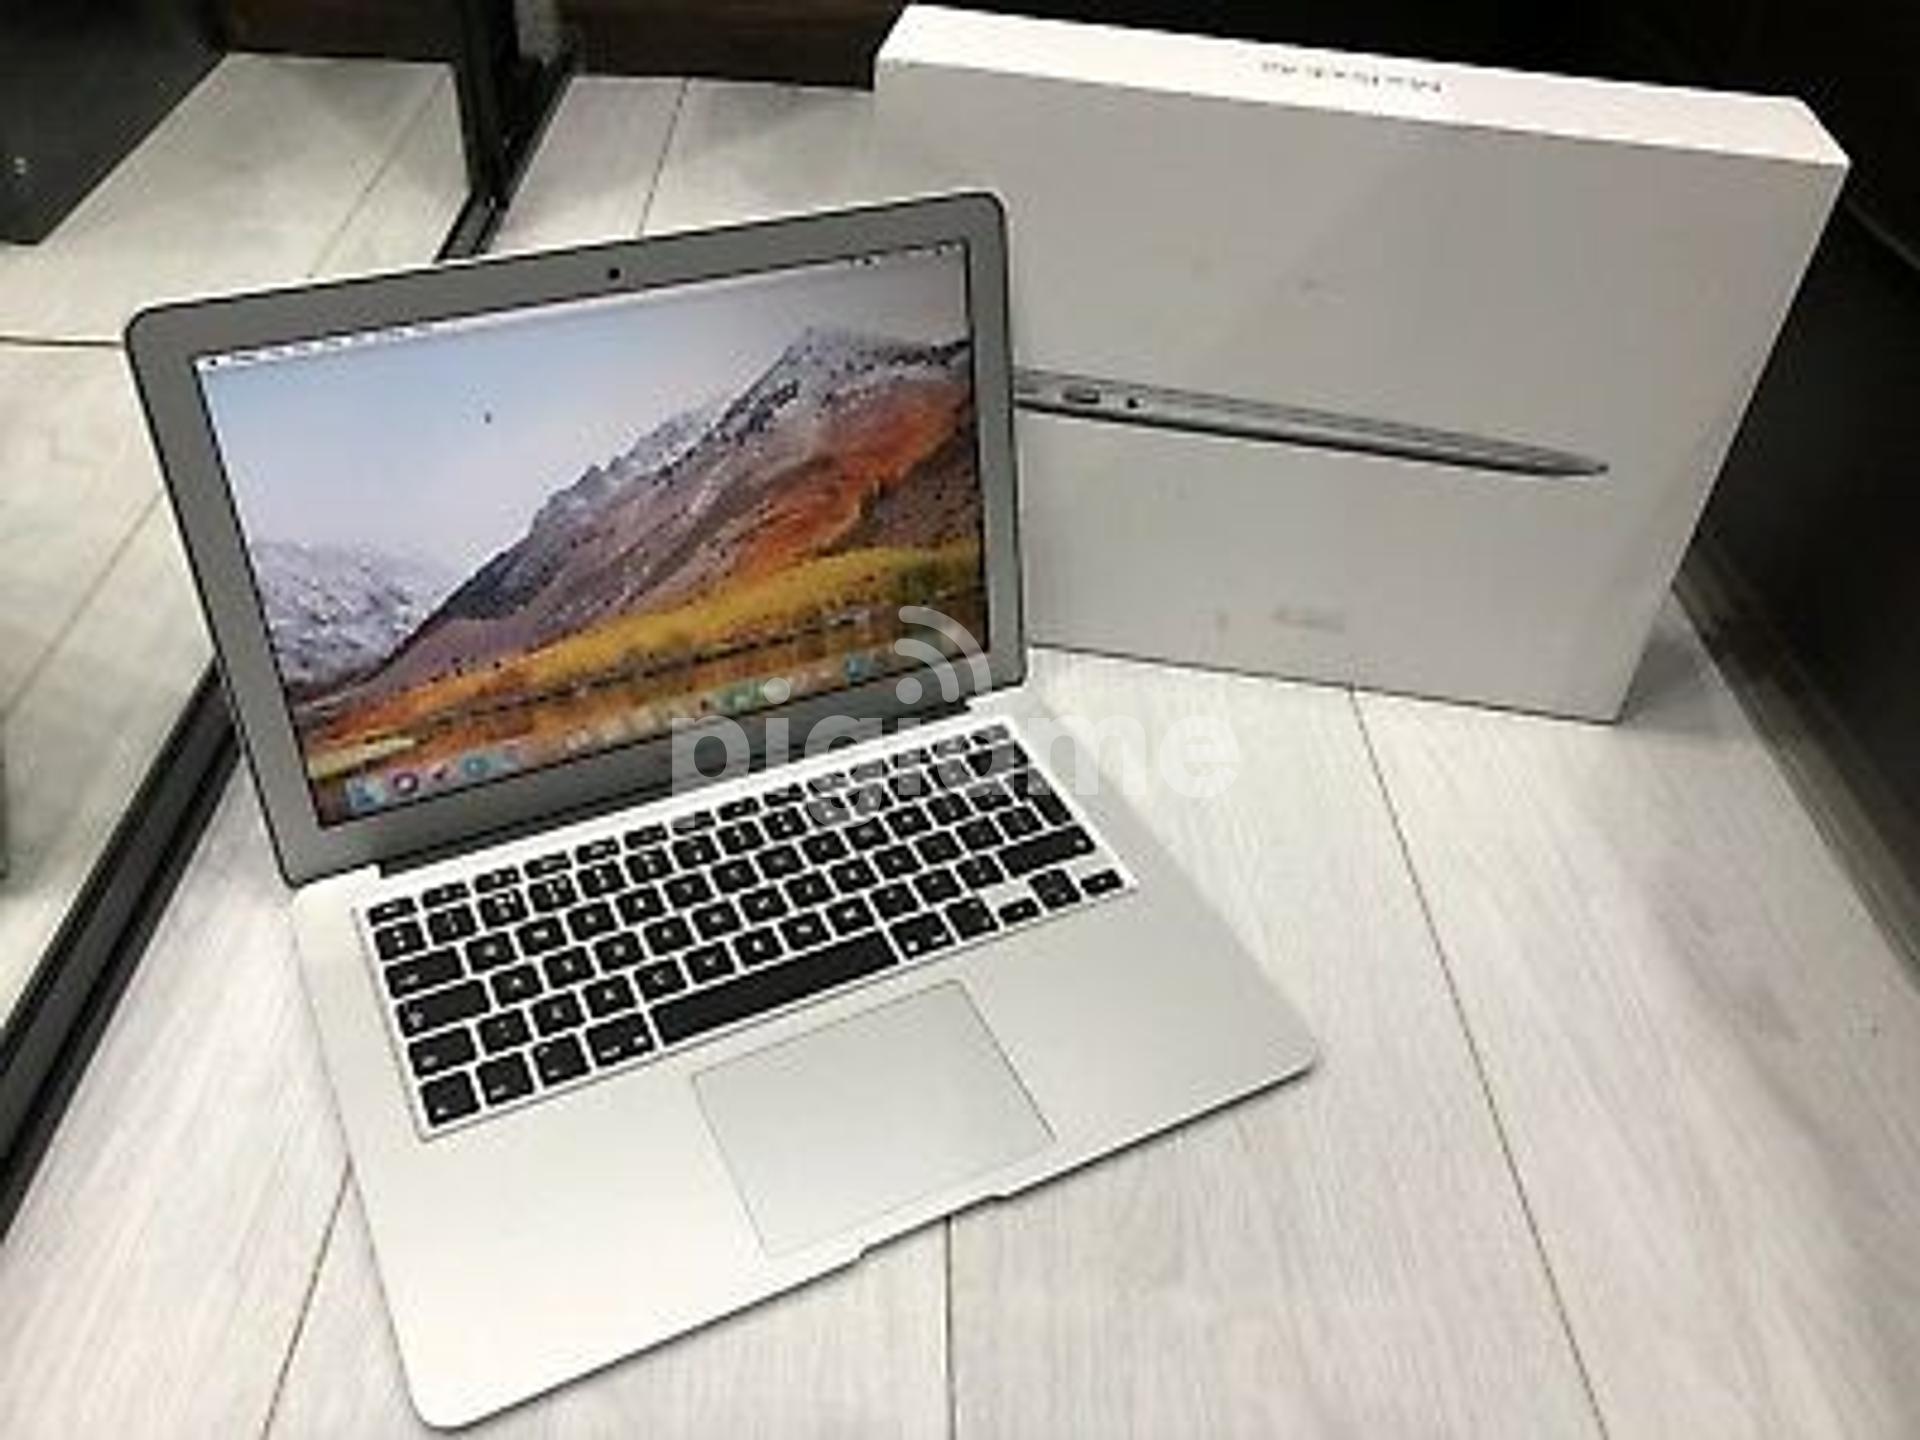 macbook air 2017 core i5